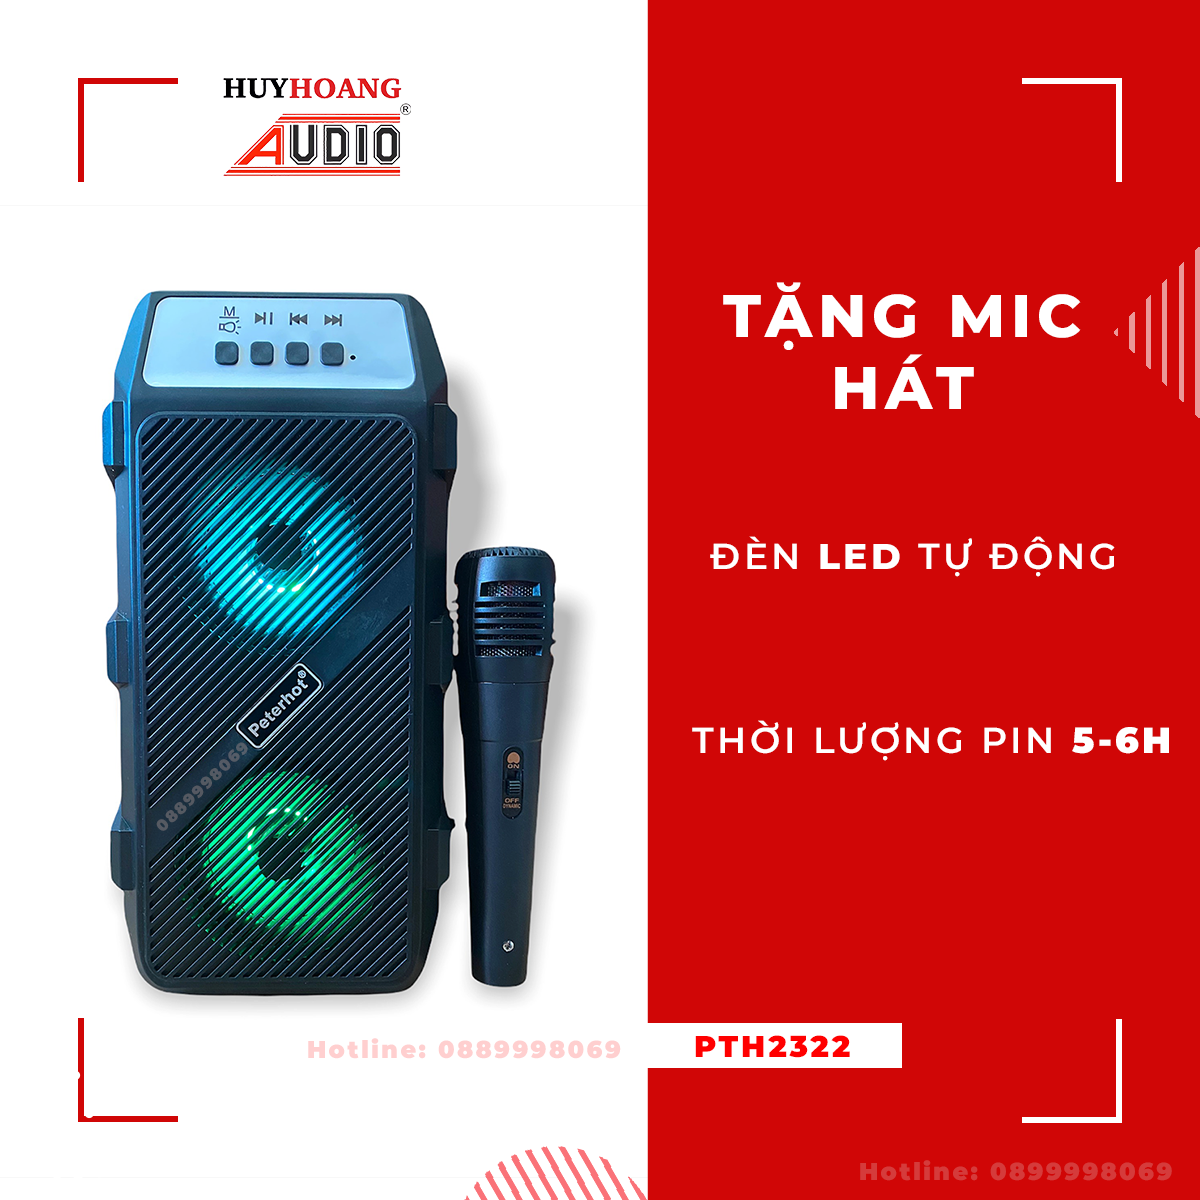 Loa Kéo Karaoke Bluetooth Mini - Loa kéo karaoke bluetooth giá rẻ - loa kẹo kéo có mic hát karaoke - loa bluetooth karaoke mini PTH2322